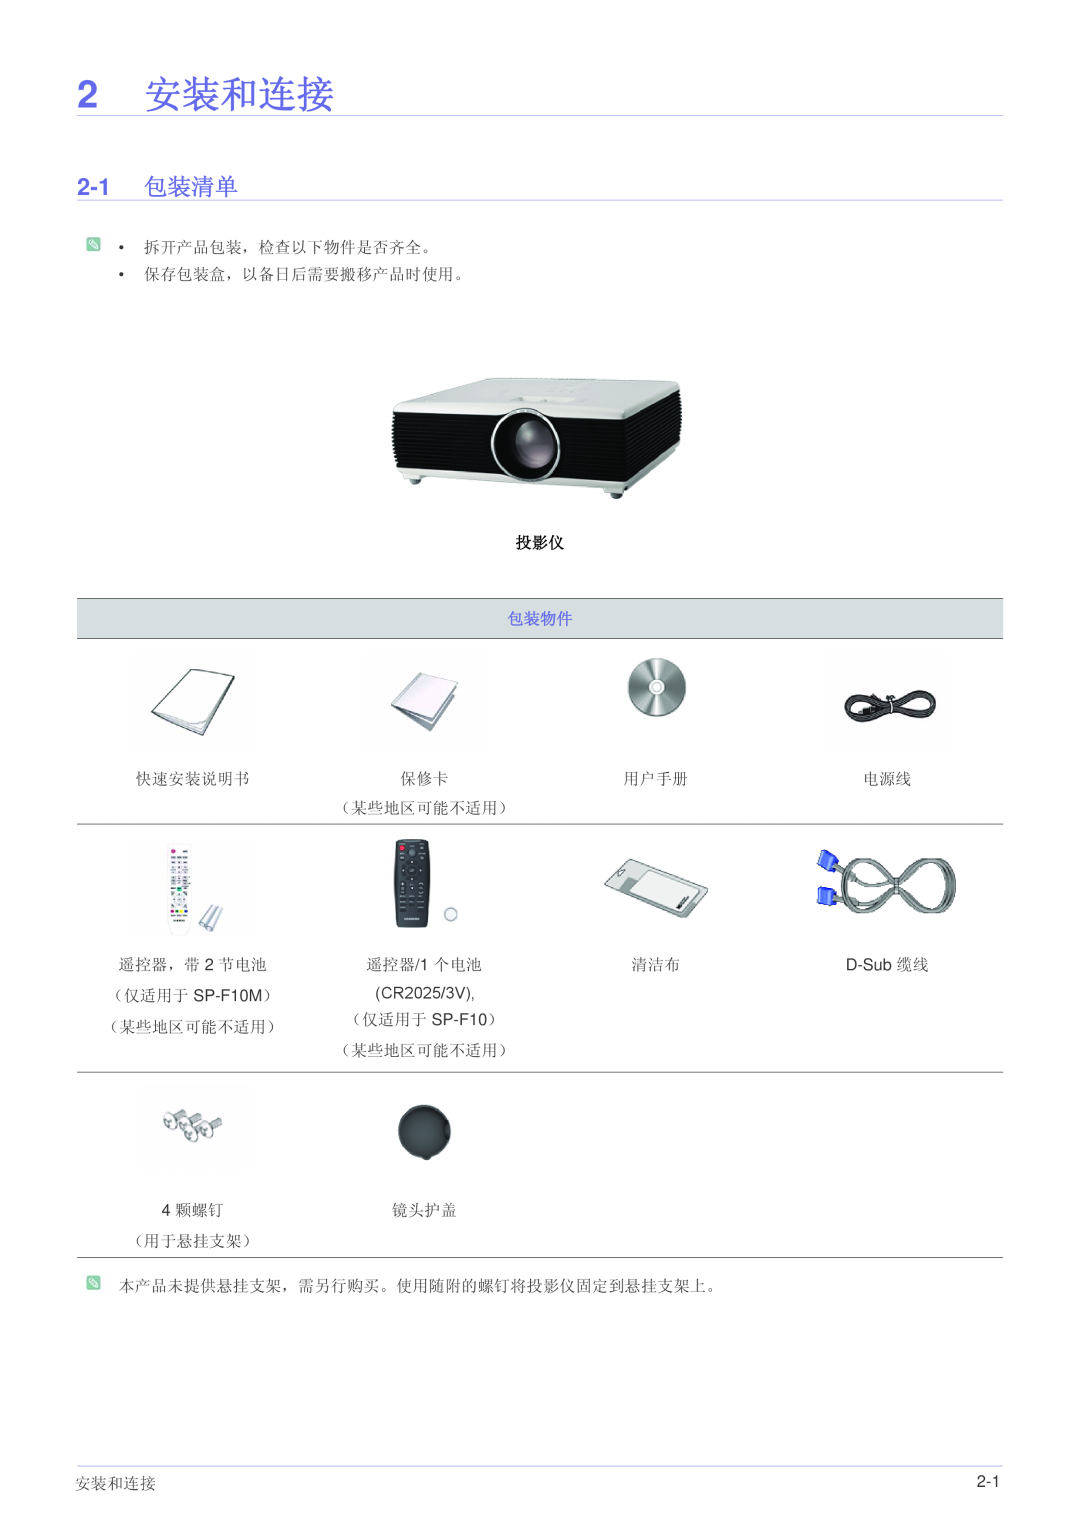 Samsung SP1005XWX/EN, SP1055XWX/EN manual 2 安装和连接, 2-1 包装清单, 包装物件 